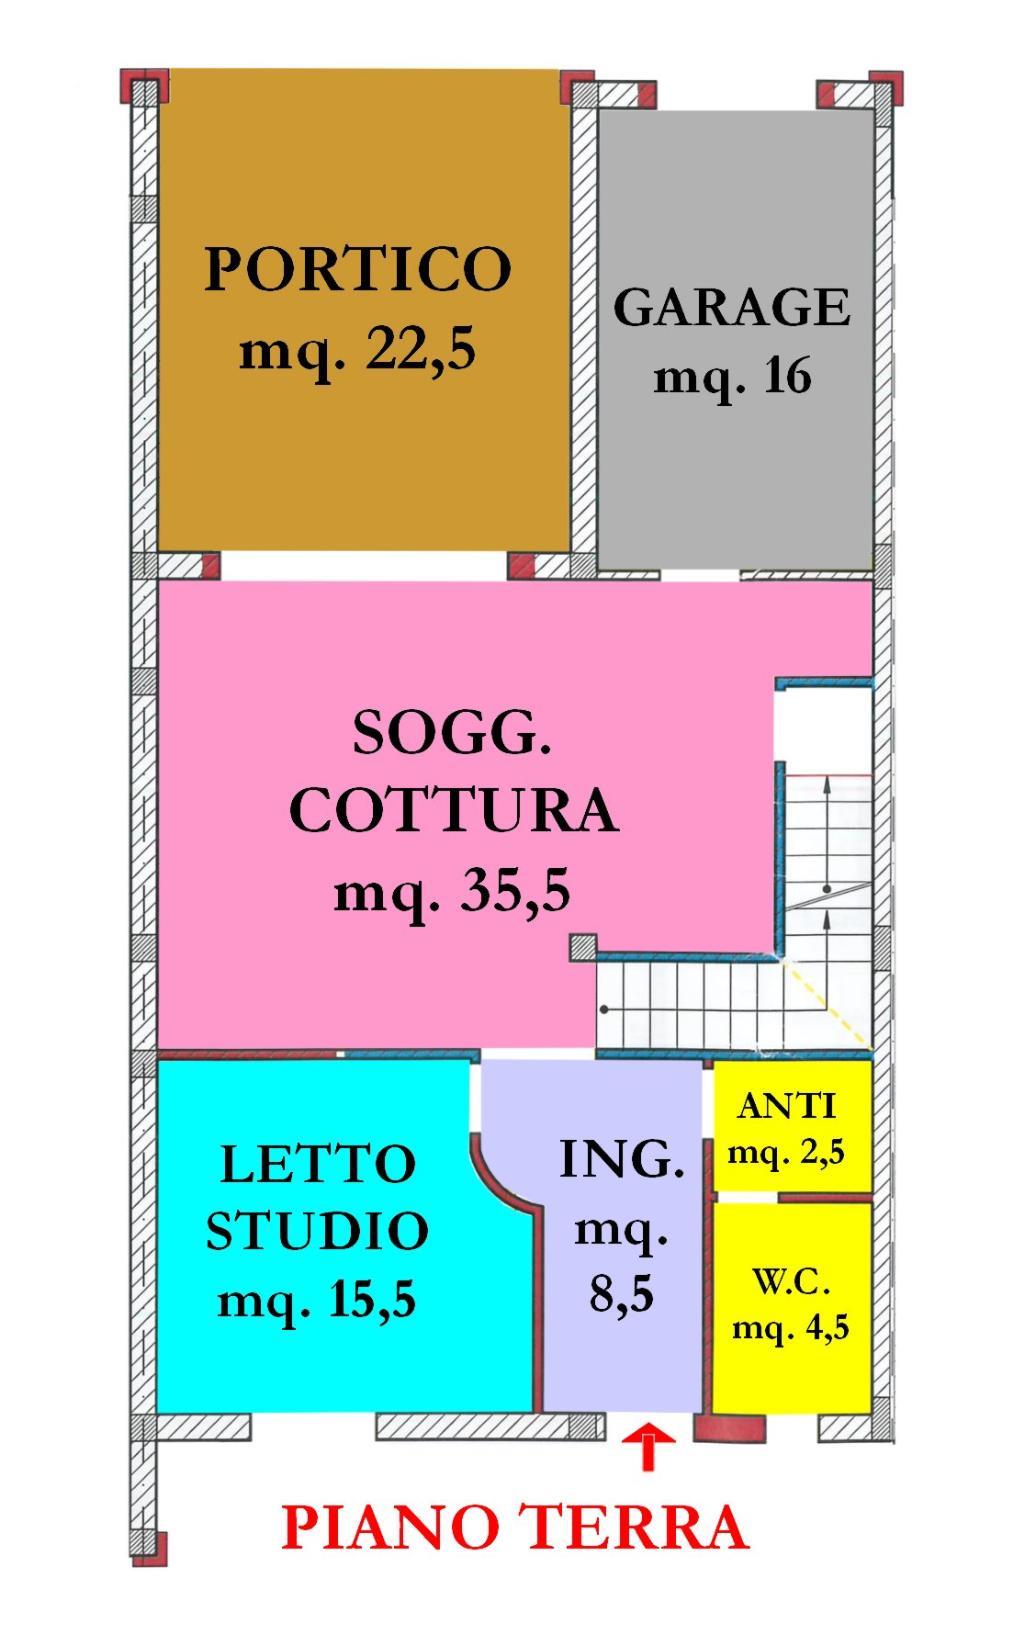 Vendita di una porzione di trifamiliare a Cesena, con quattro camere da letto, ampia zona giorno, garage, cantina e portico e dependance